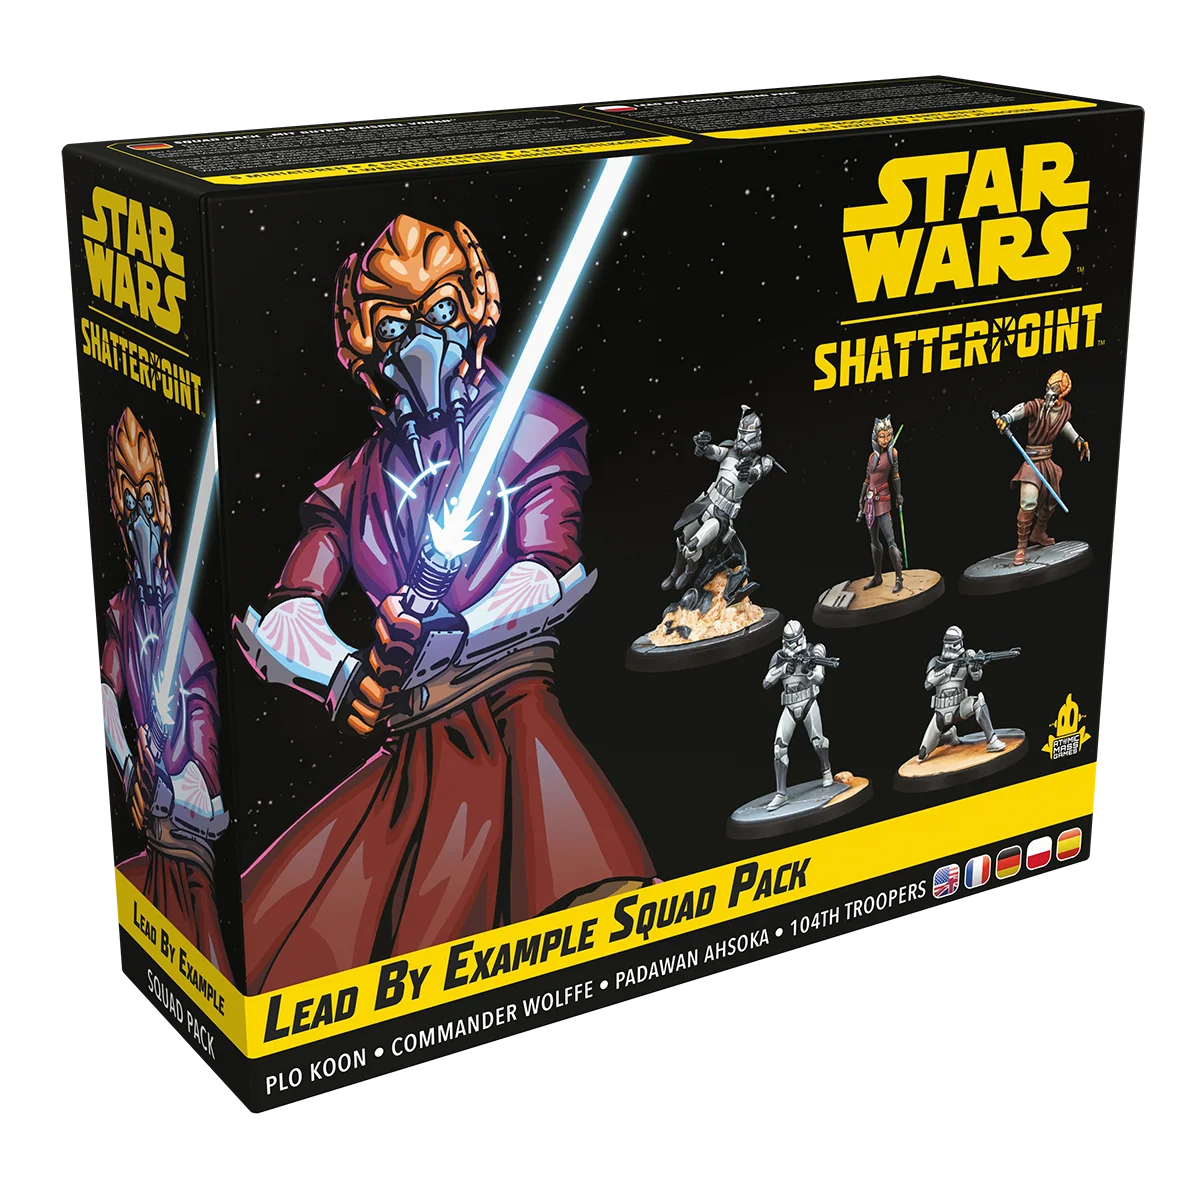 Star Wars: Shatterpoint – Lead by Example Squad Pack (“Mit gutem Beispiel voran”)